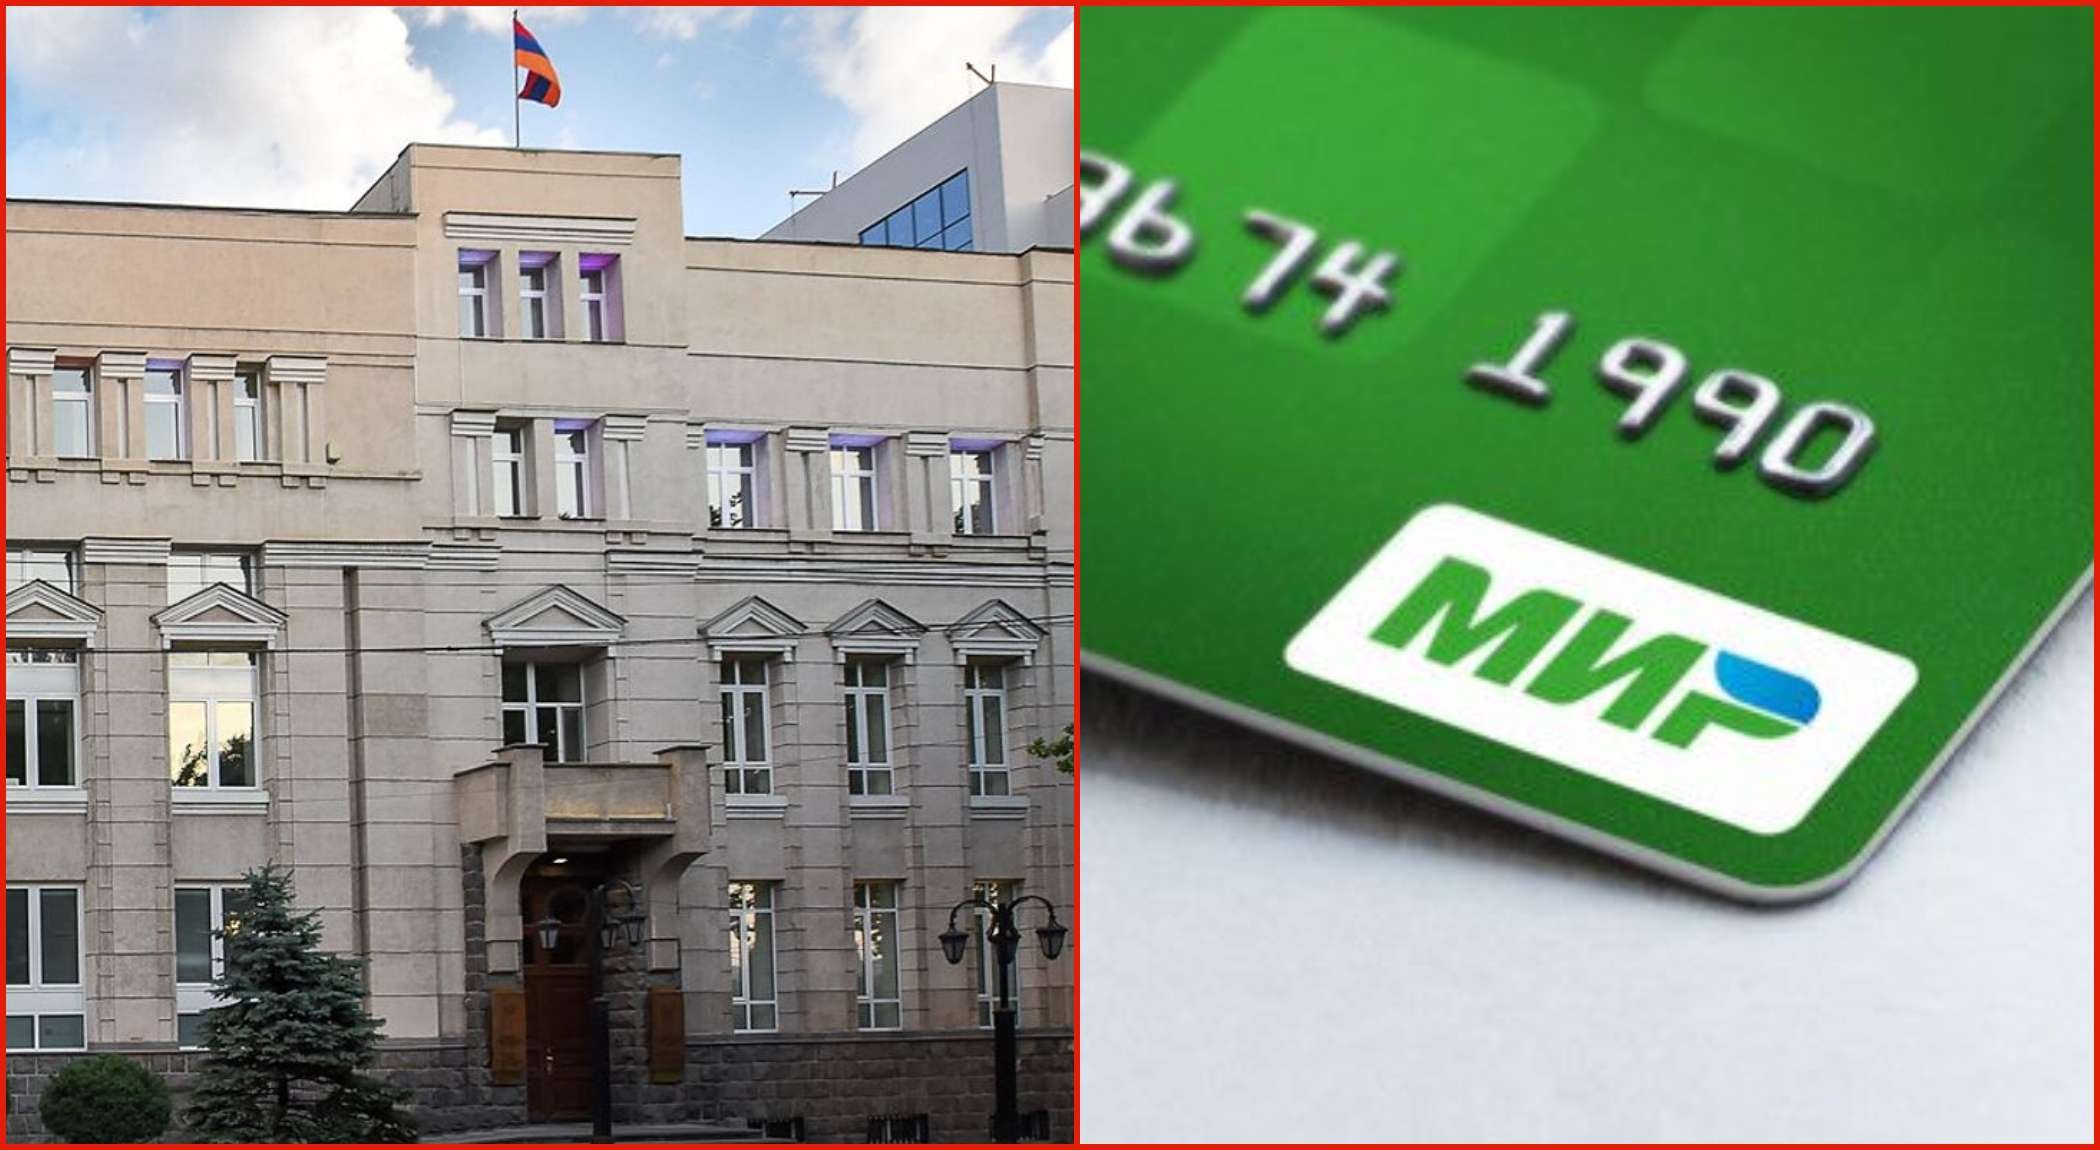 МИР վճարային համակարգի քարտերը կդադարեն աշխատել Հայաստանի բանկերում, բացի «ՎՏԲ Հայաստանի» ենթակառուցվածքից